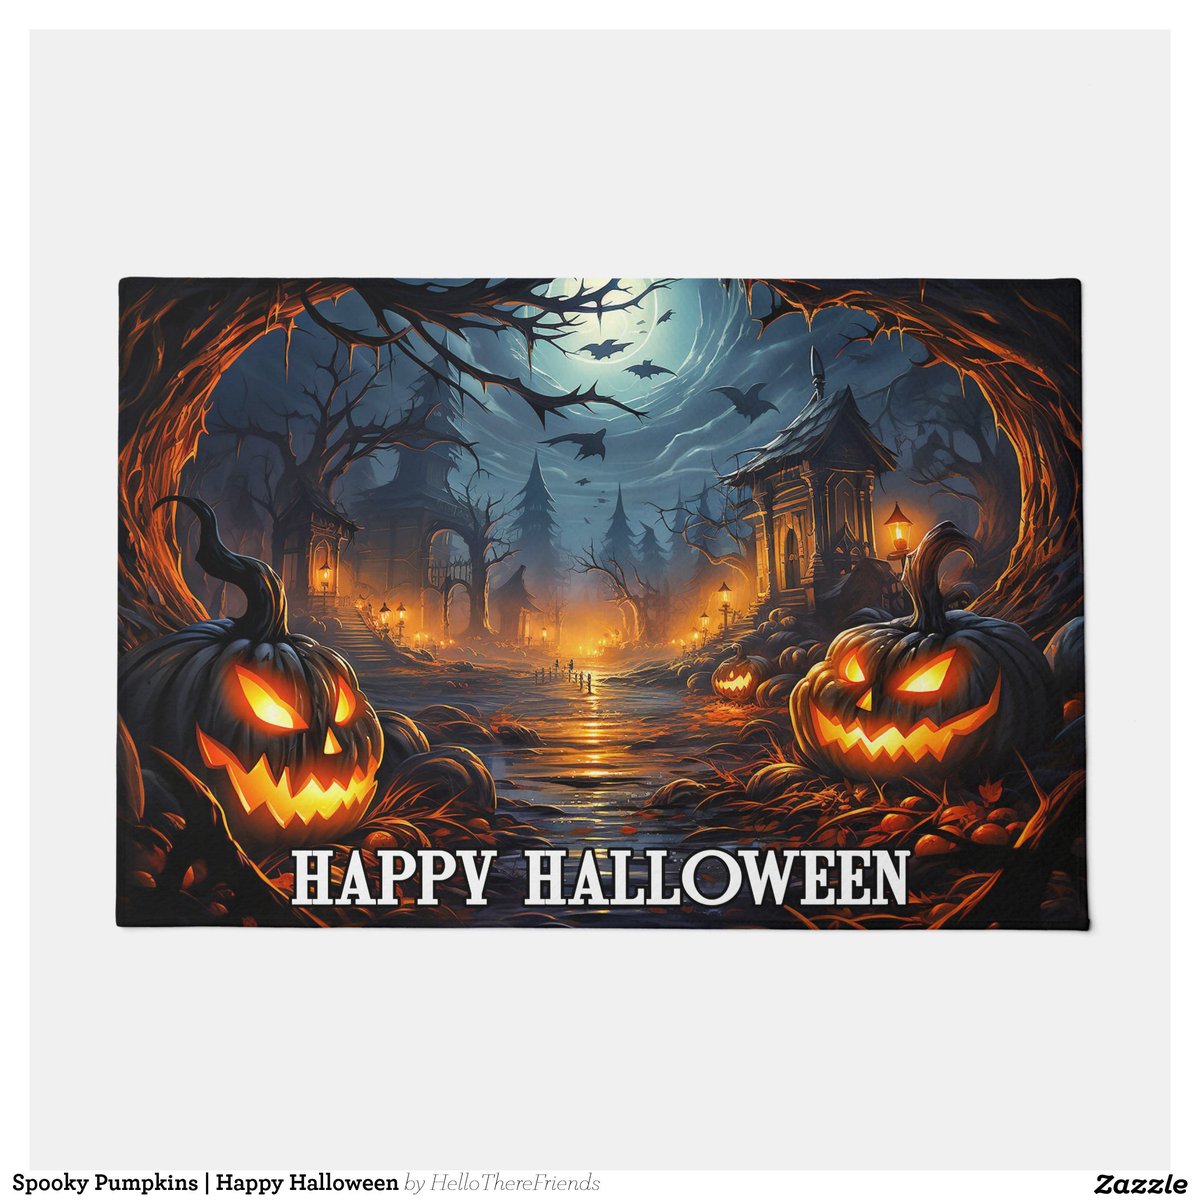 Spooky Pumpkins | Happy Halloween Doormat→zazzle.com/z/dgjlnw4g?rf=…

#WelcomeMat #WelcomeDoormat #HappyHalloween #Halloween2024 #TrickOrTreat #HauntedHouse #HomeDecor #HolidayDecor #Zazzle